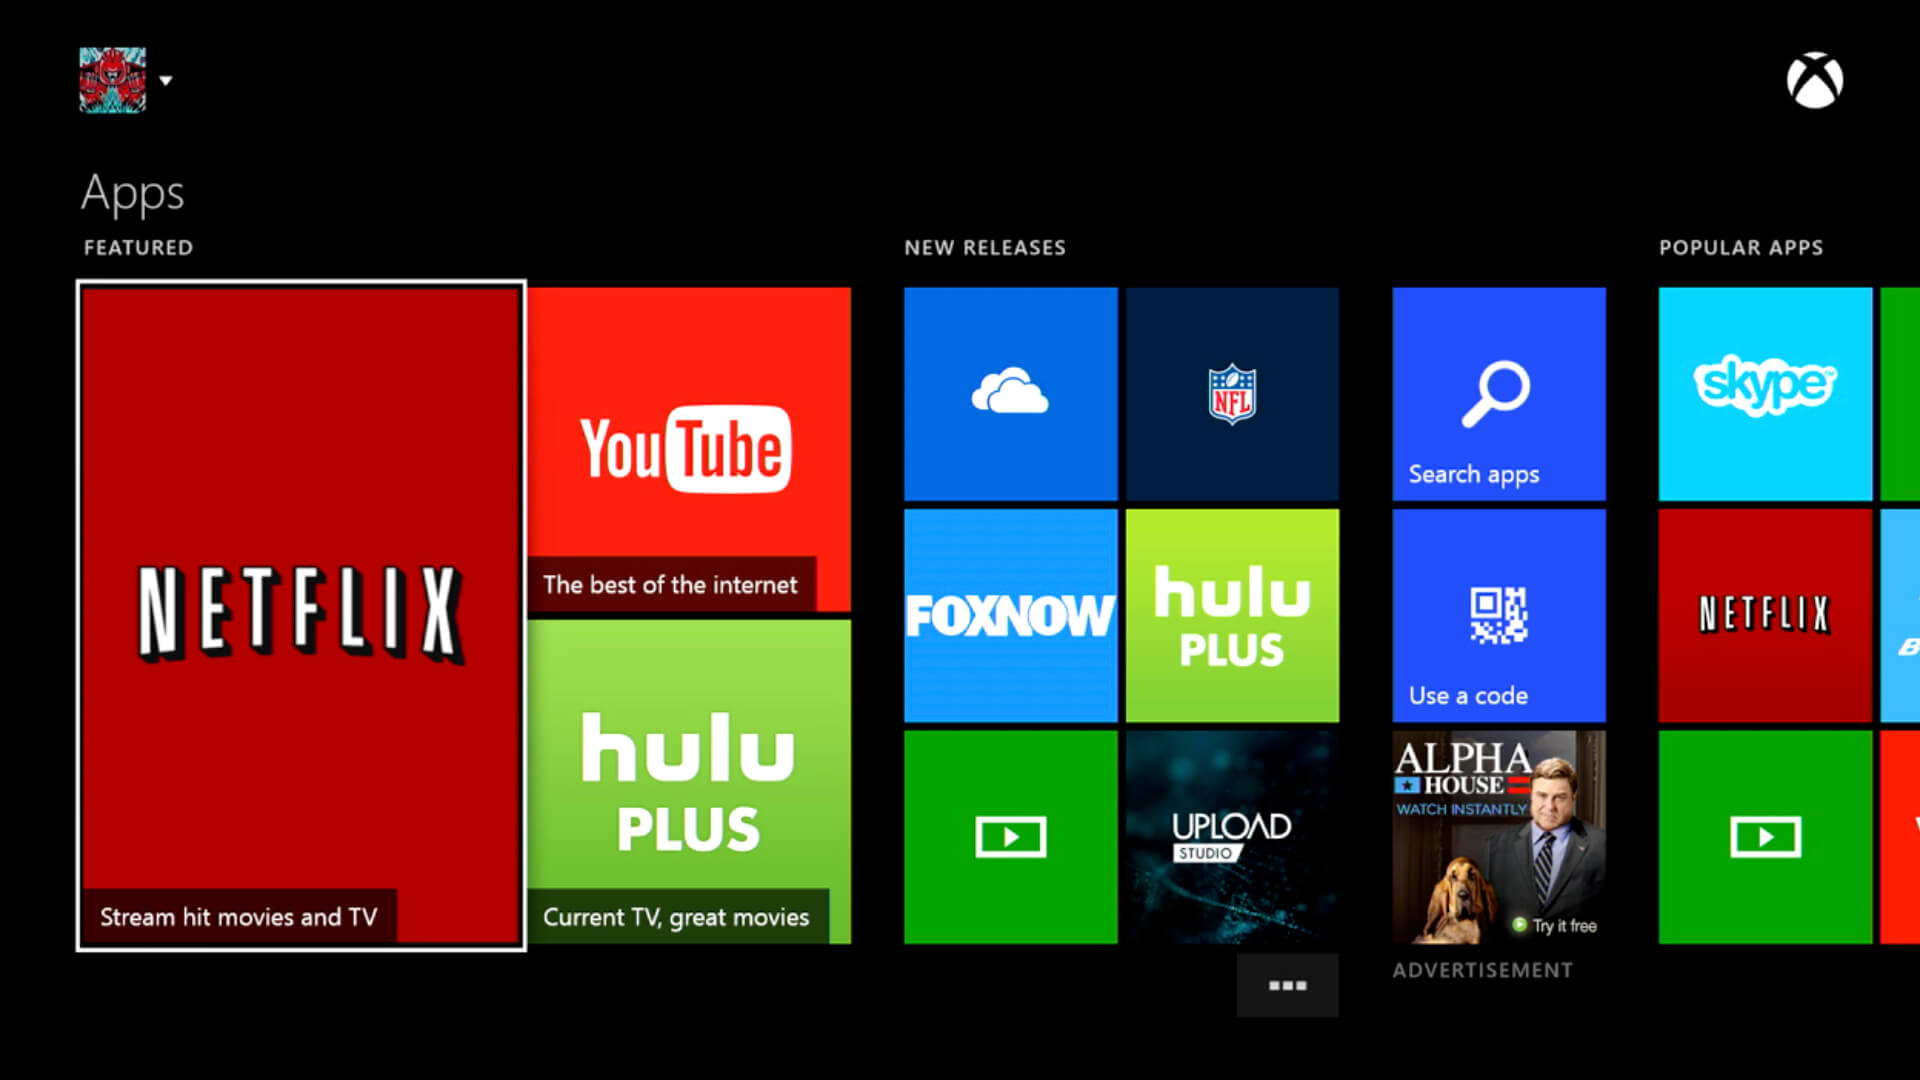  Hulu su Xbox è un servizio di streaming video che consente agli utenti di guardare film, serie TV e altri contenuti su una console Xbox. È disponibile come app sullo store di Xbox e richiede un abbonamento a Hulu per accedere ai contenuti. Gli utenti possono navigare tra i contenuti, cercare specifici titoli e guardare in streaming in alta definizione. Hulu su Xbox offre anche funzionalità come la in - Italia 